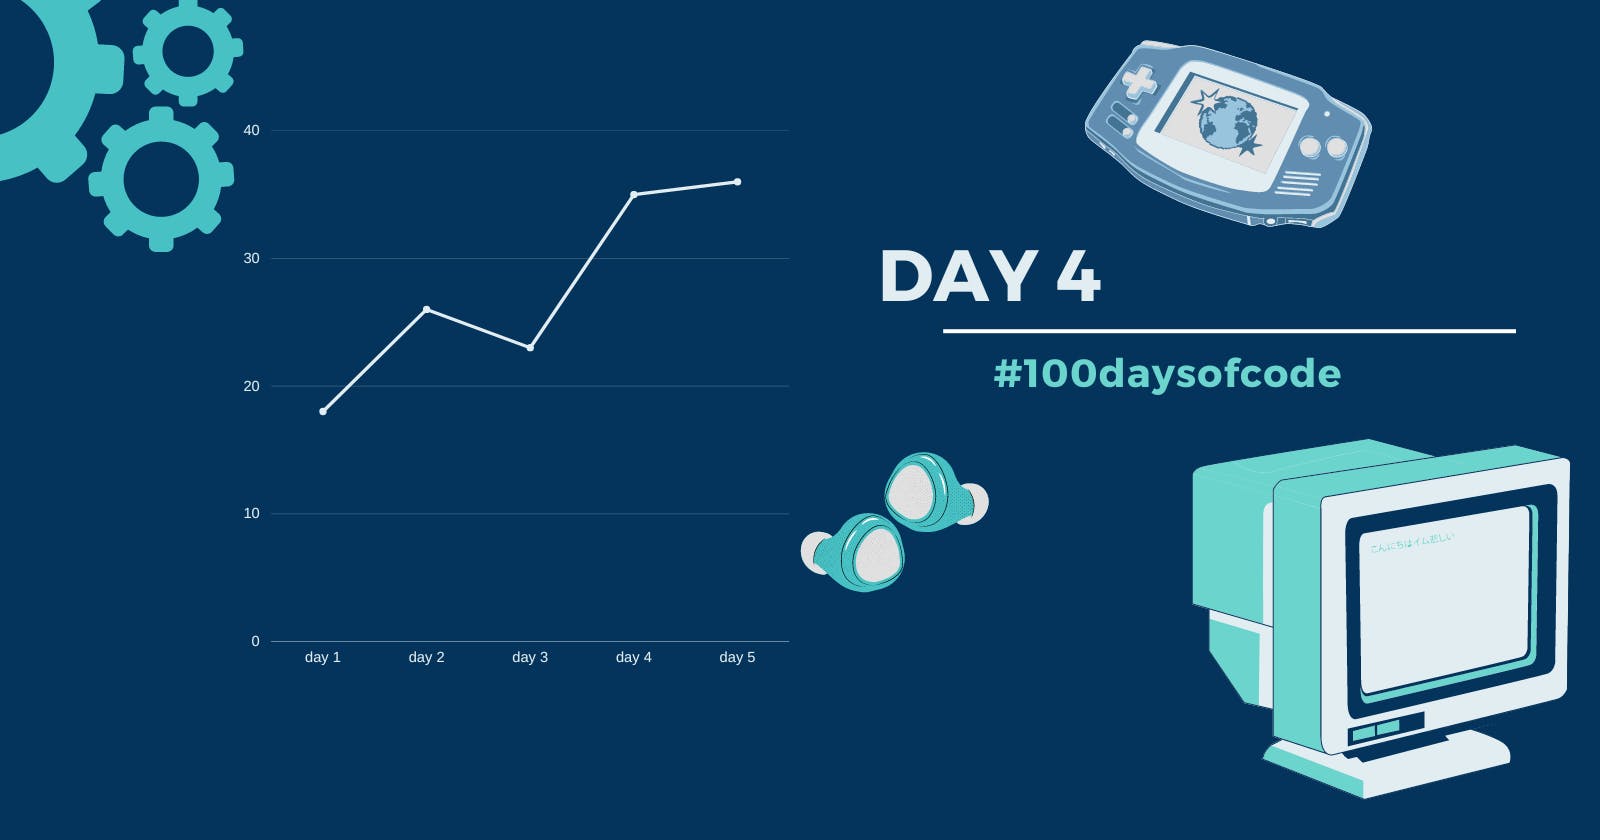 Day 4 in #100daysofcode challenge